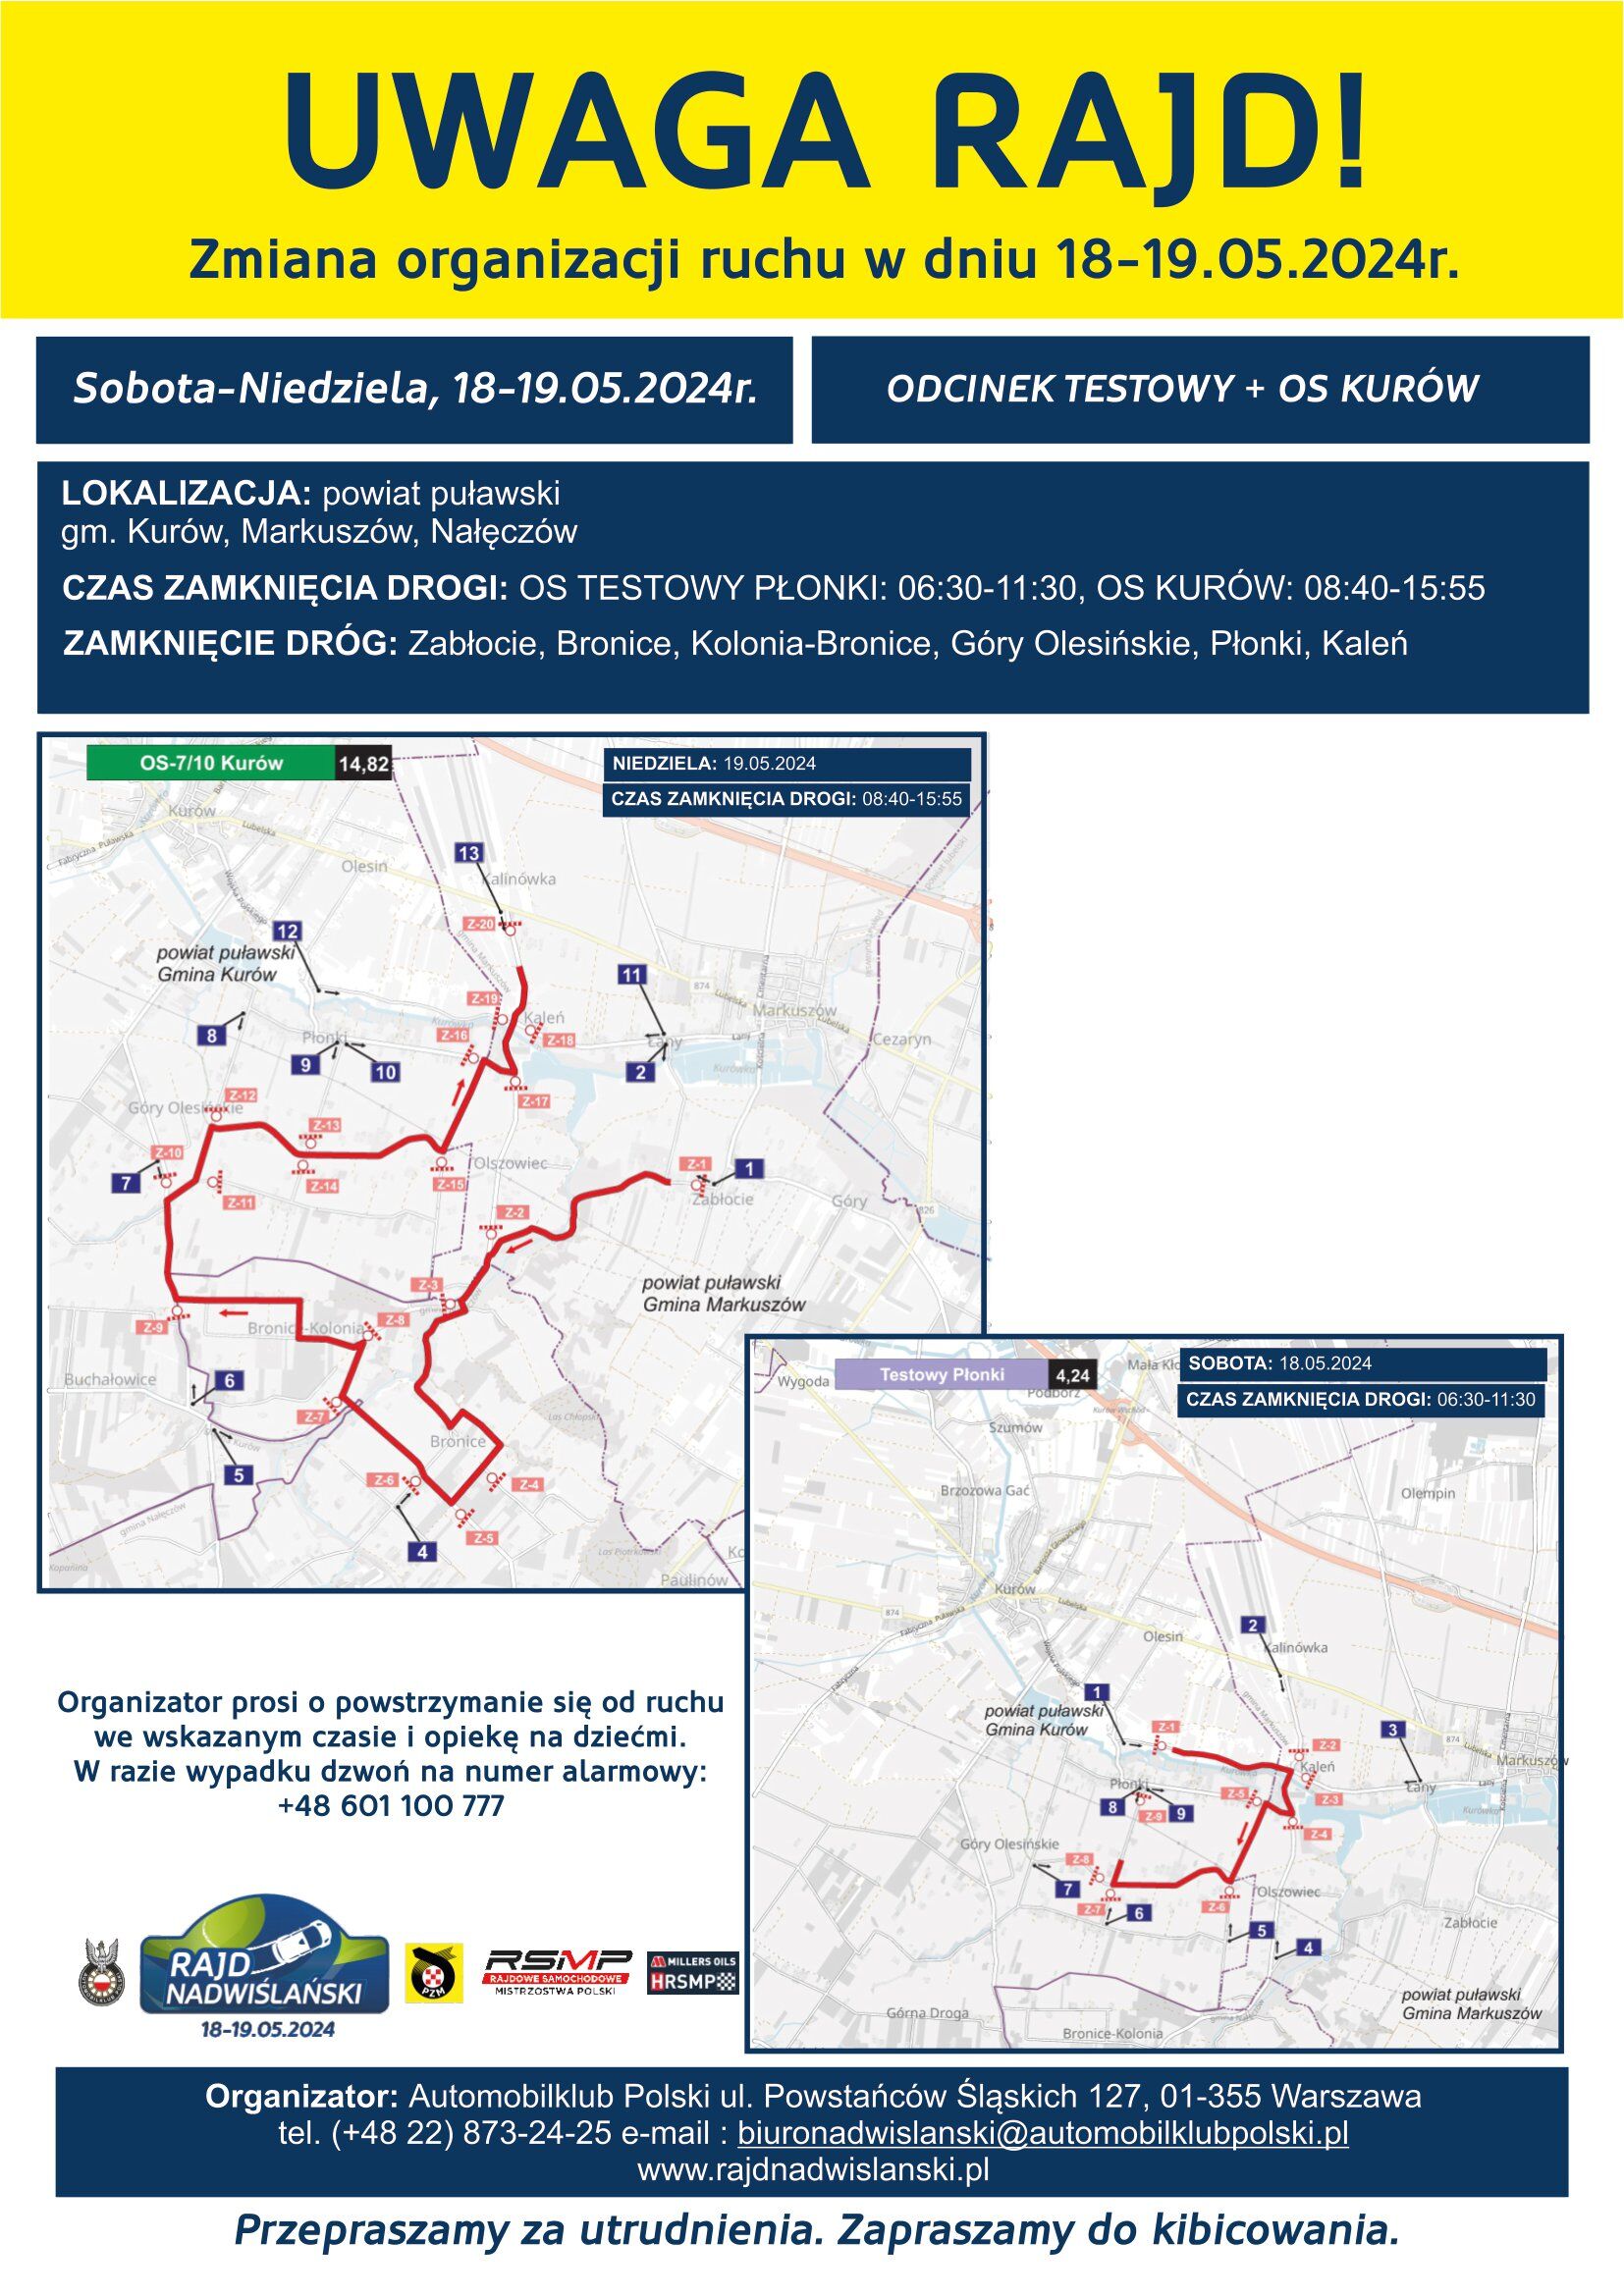 Powyżej znajduje się plakat informacyjny o zamknięciu dróg na terenie gminy Kurozwęki z powodu rajdu samochodowego Rajd Kielce zaplanowanego na dni 18-19.05. Szczegóły dotyczące lokalizacji, godzin oraz tras obstruction znajdują się na mapie i w tekście.